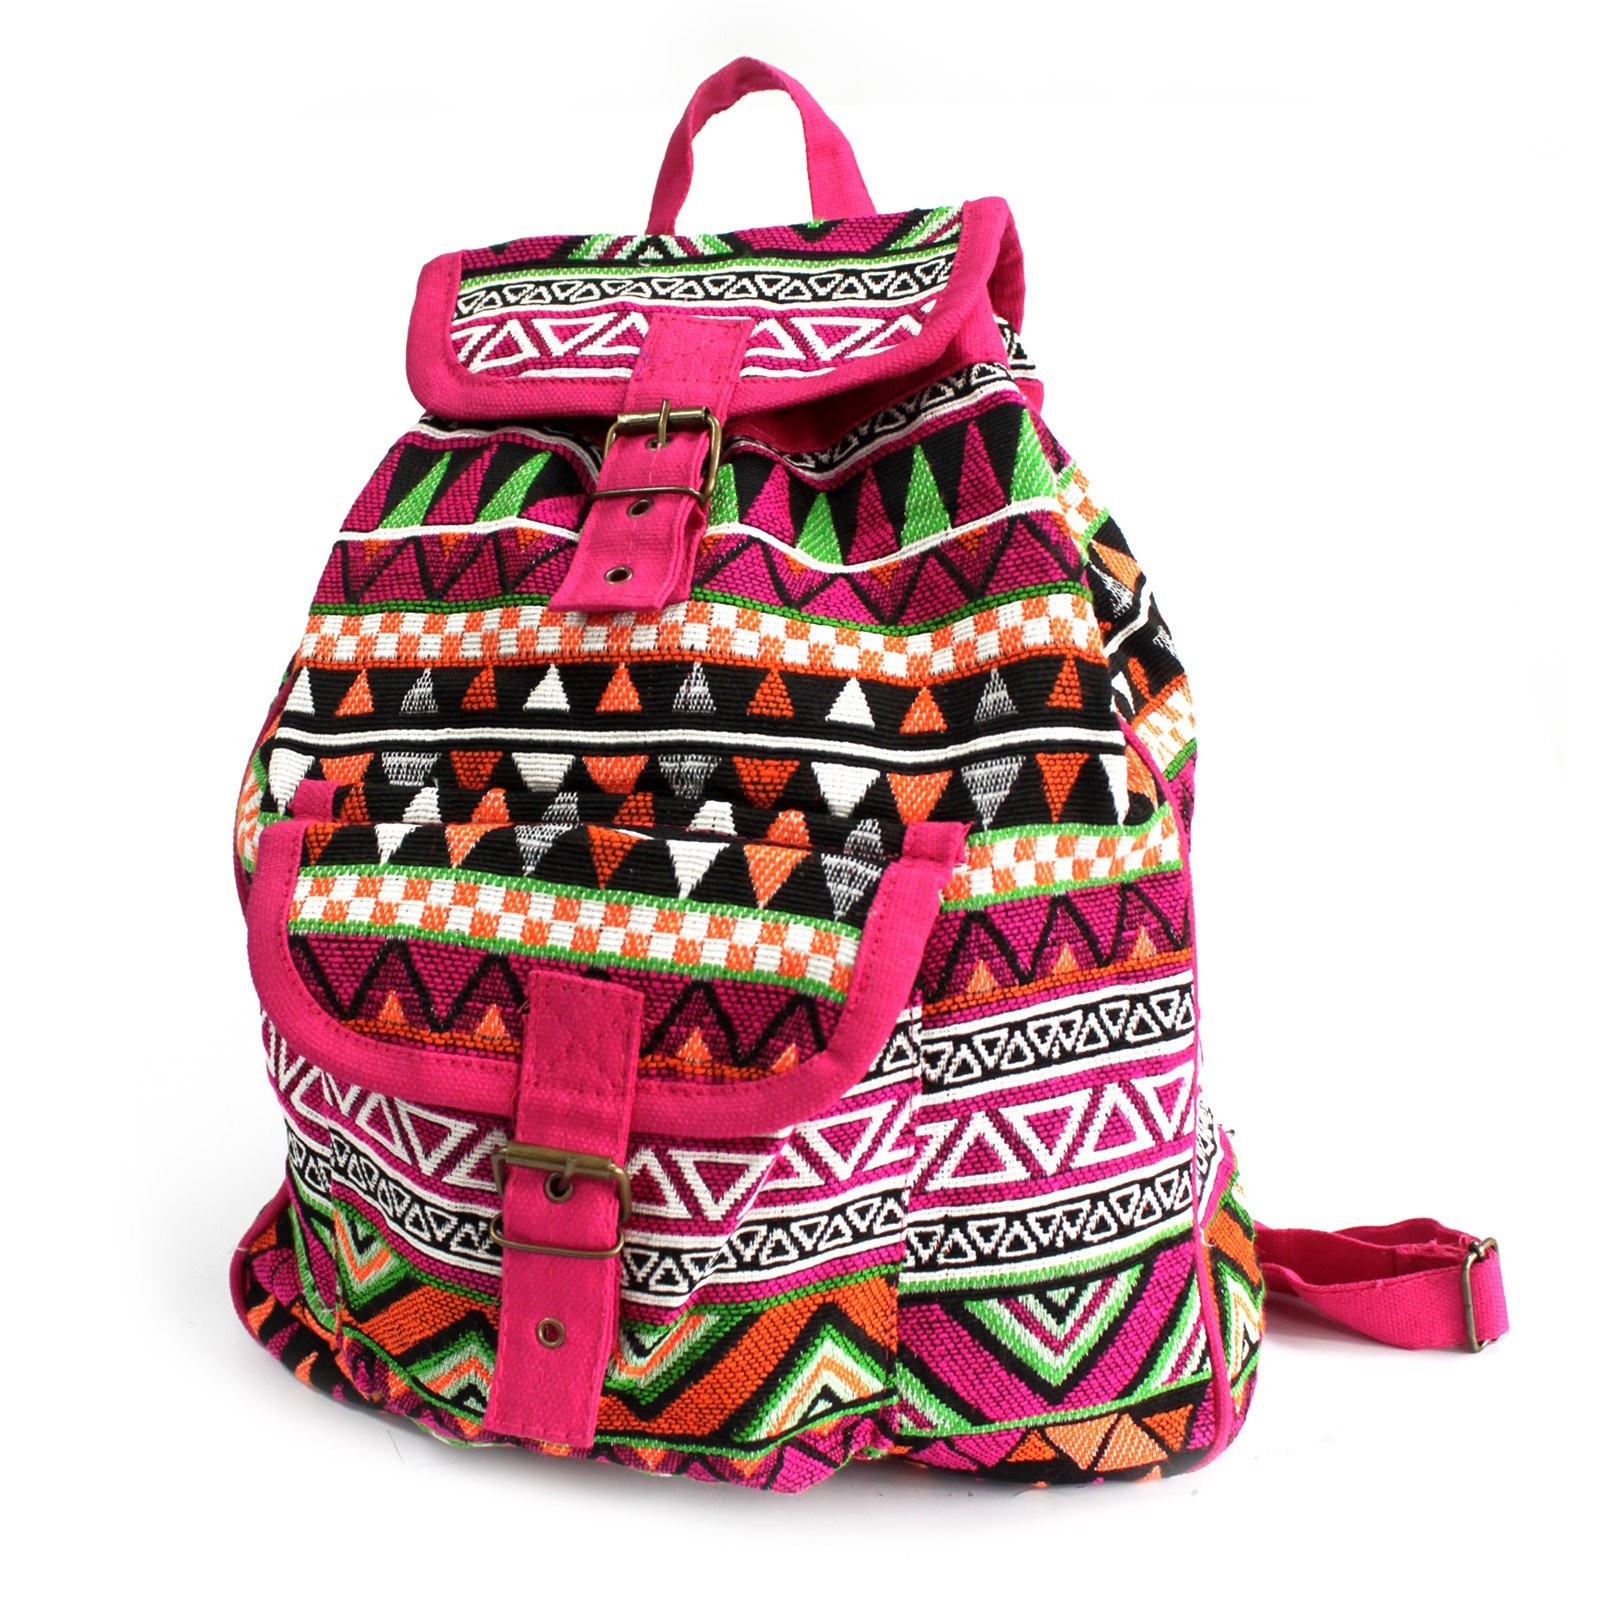 Jacquard Bag - Pink Backpack - JNS-03